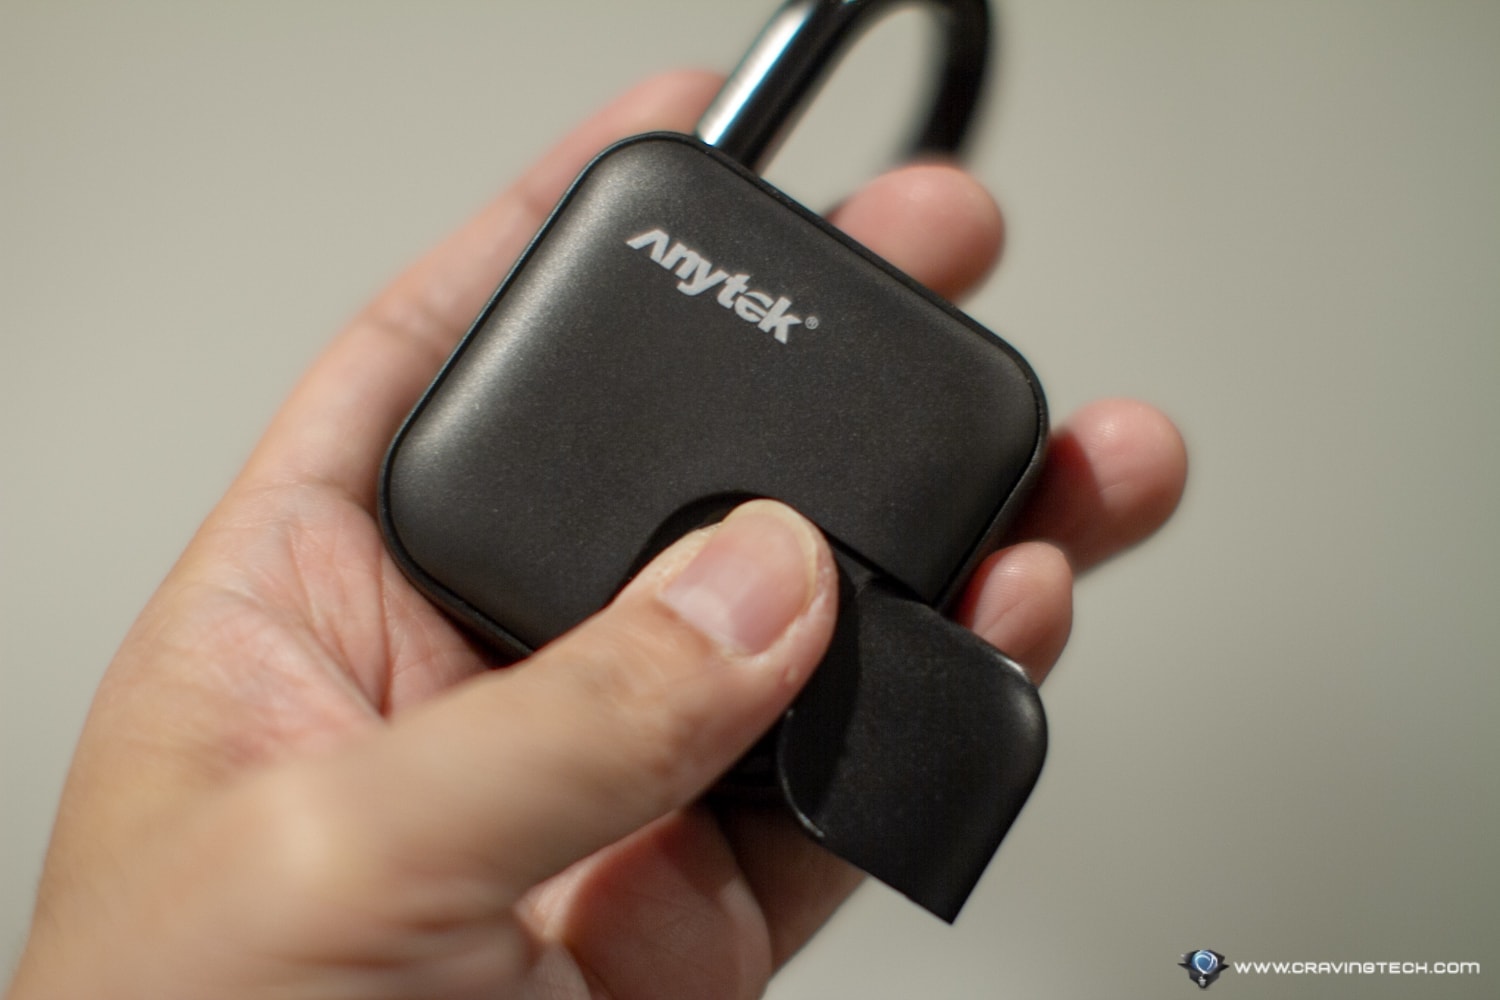 This padlock with fingerprint sensor makes life so much easier – Anysafe Fingerprint Padlock Anytek P1 Review